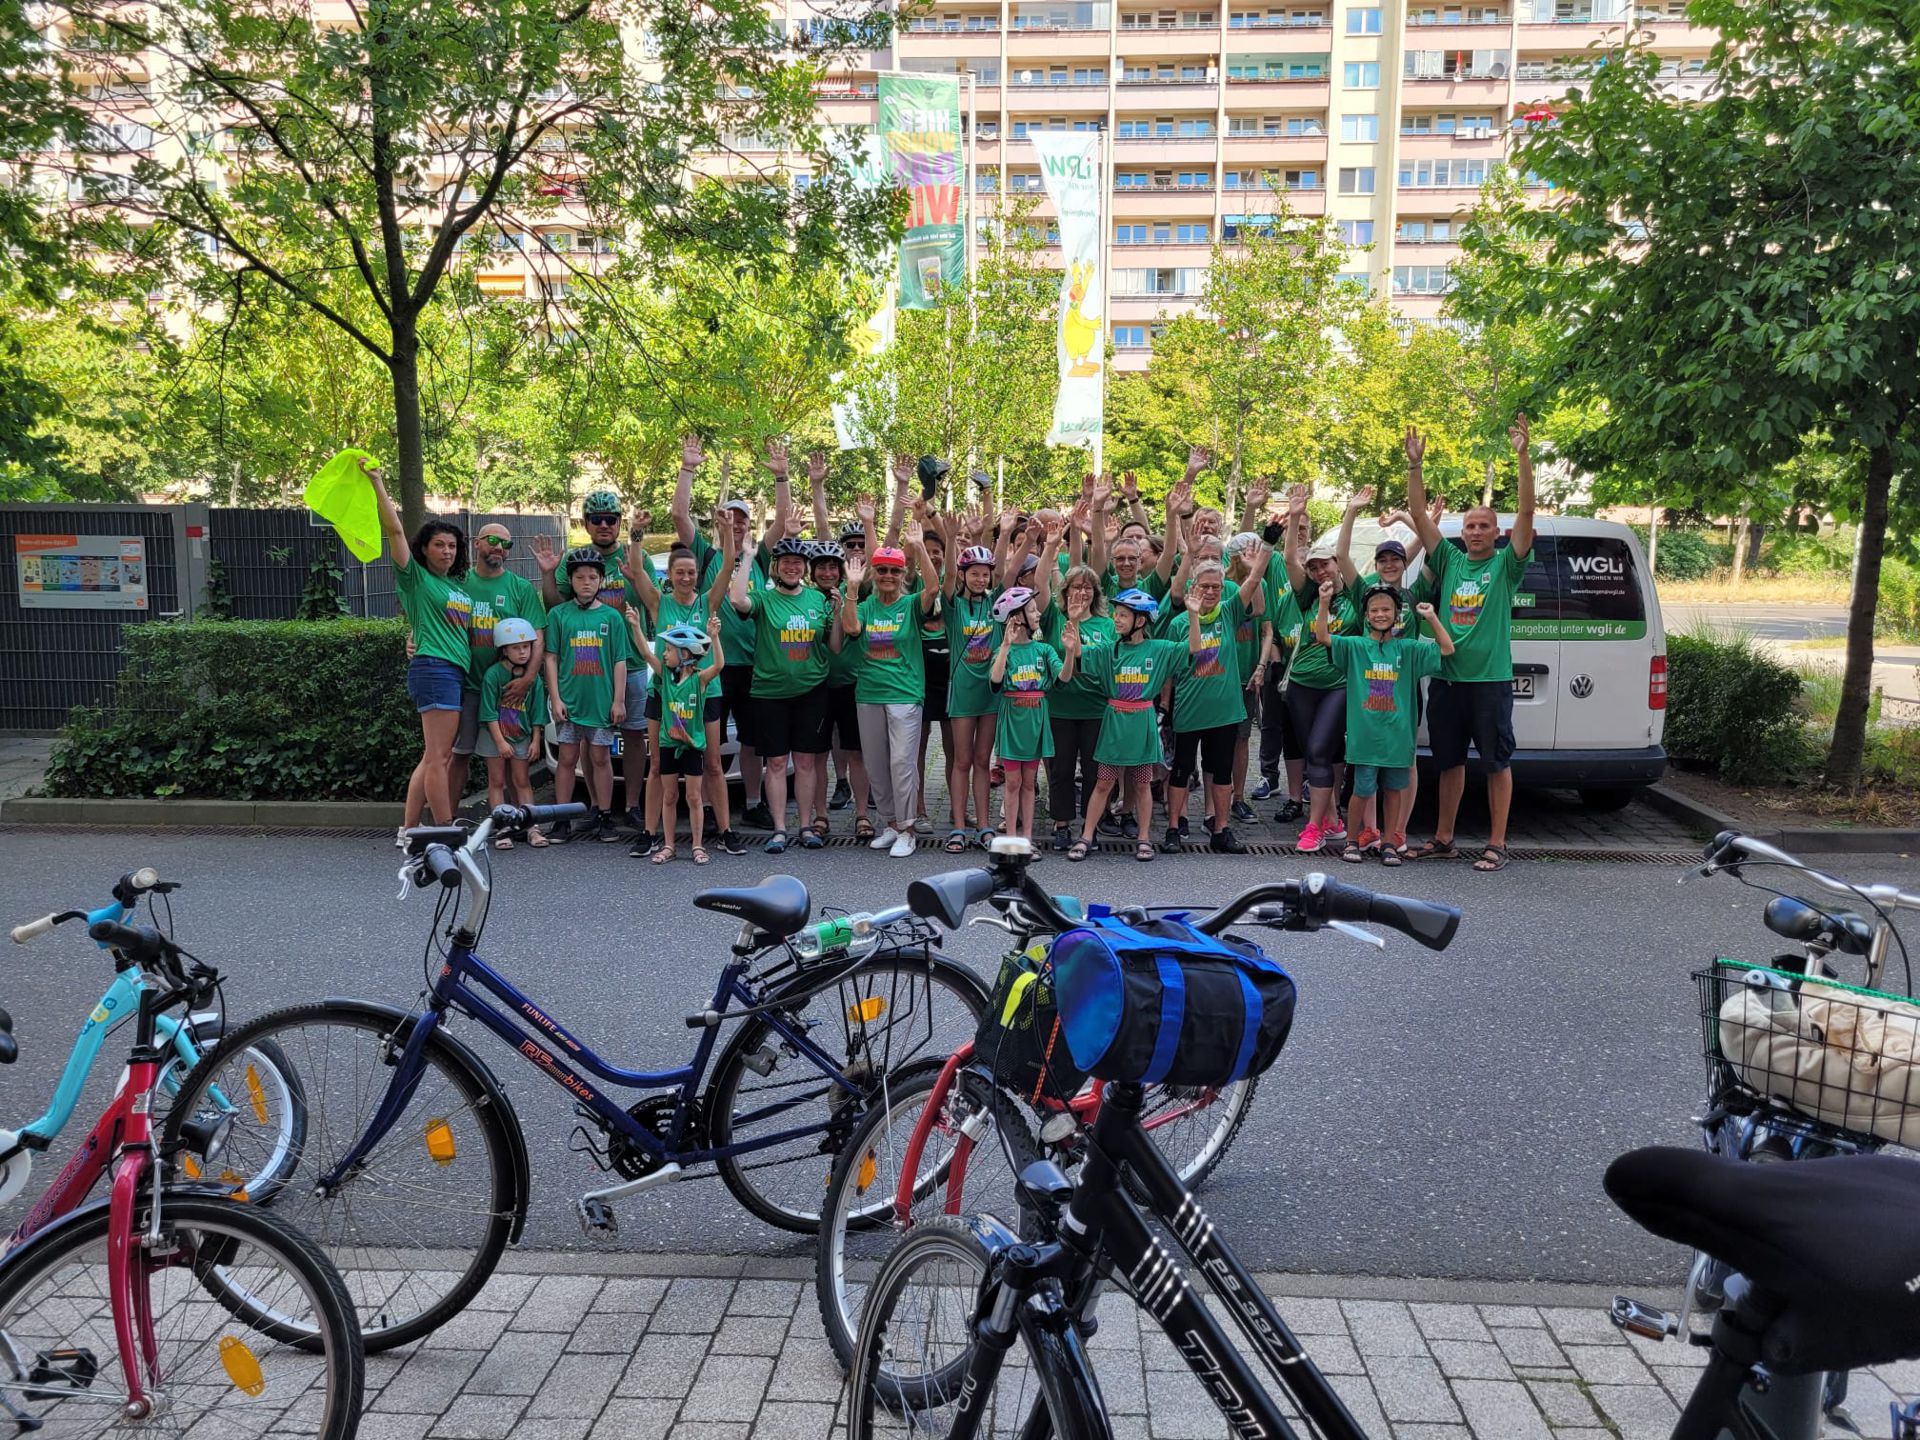 Teilnehmerinnen und Teilnehmer der Sternfahrt mit Fahrrädern vor der WGLi-Geschäftsstelle Landsberger Allee 180 B